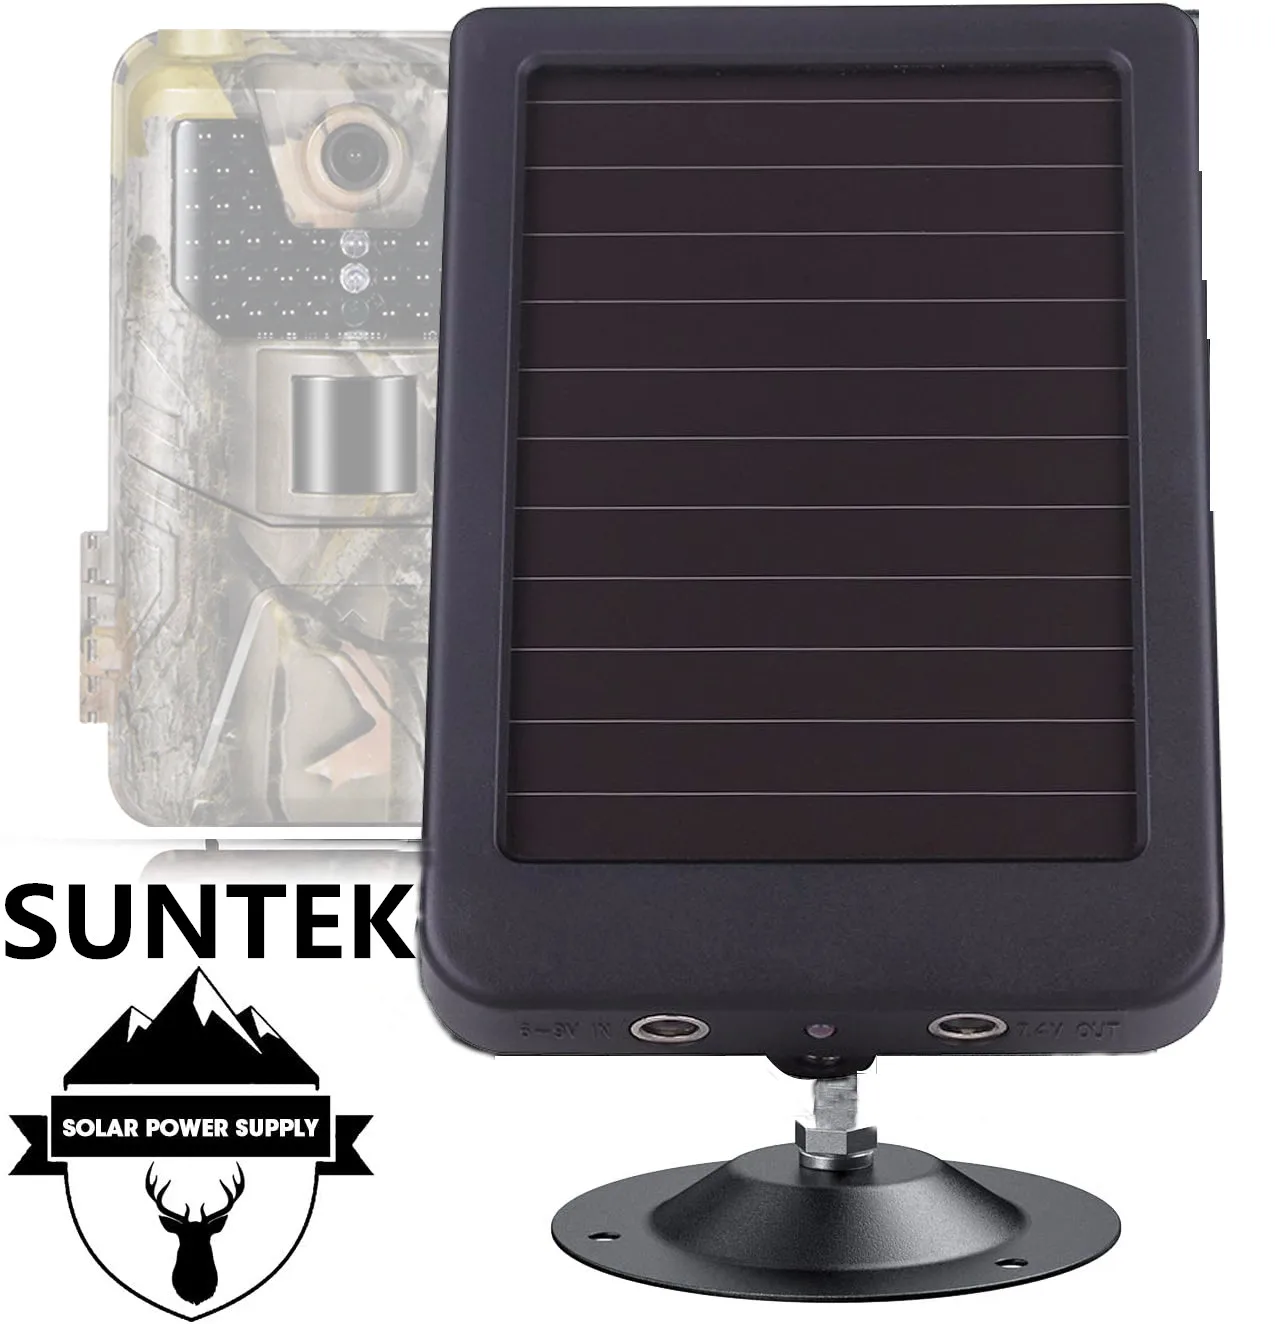 Panel Solar para exteriores, cargador de fuente de energía Solar de 3000mah y 9V, batería para cámaras de rastreo Suntek HC300, HC500, HC700, HC801, HC-900